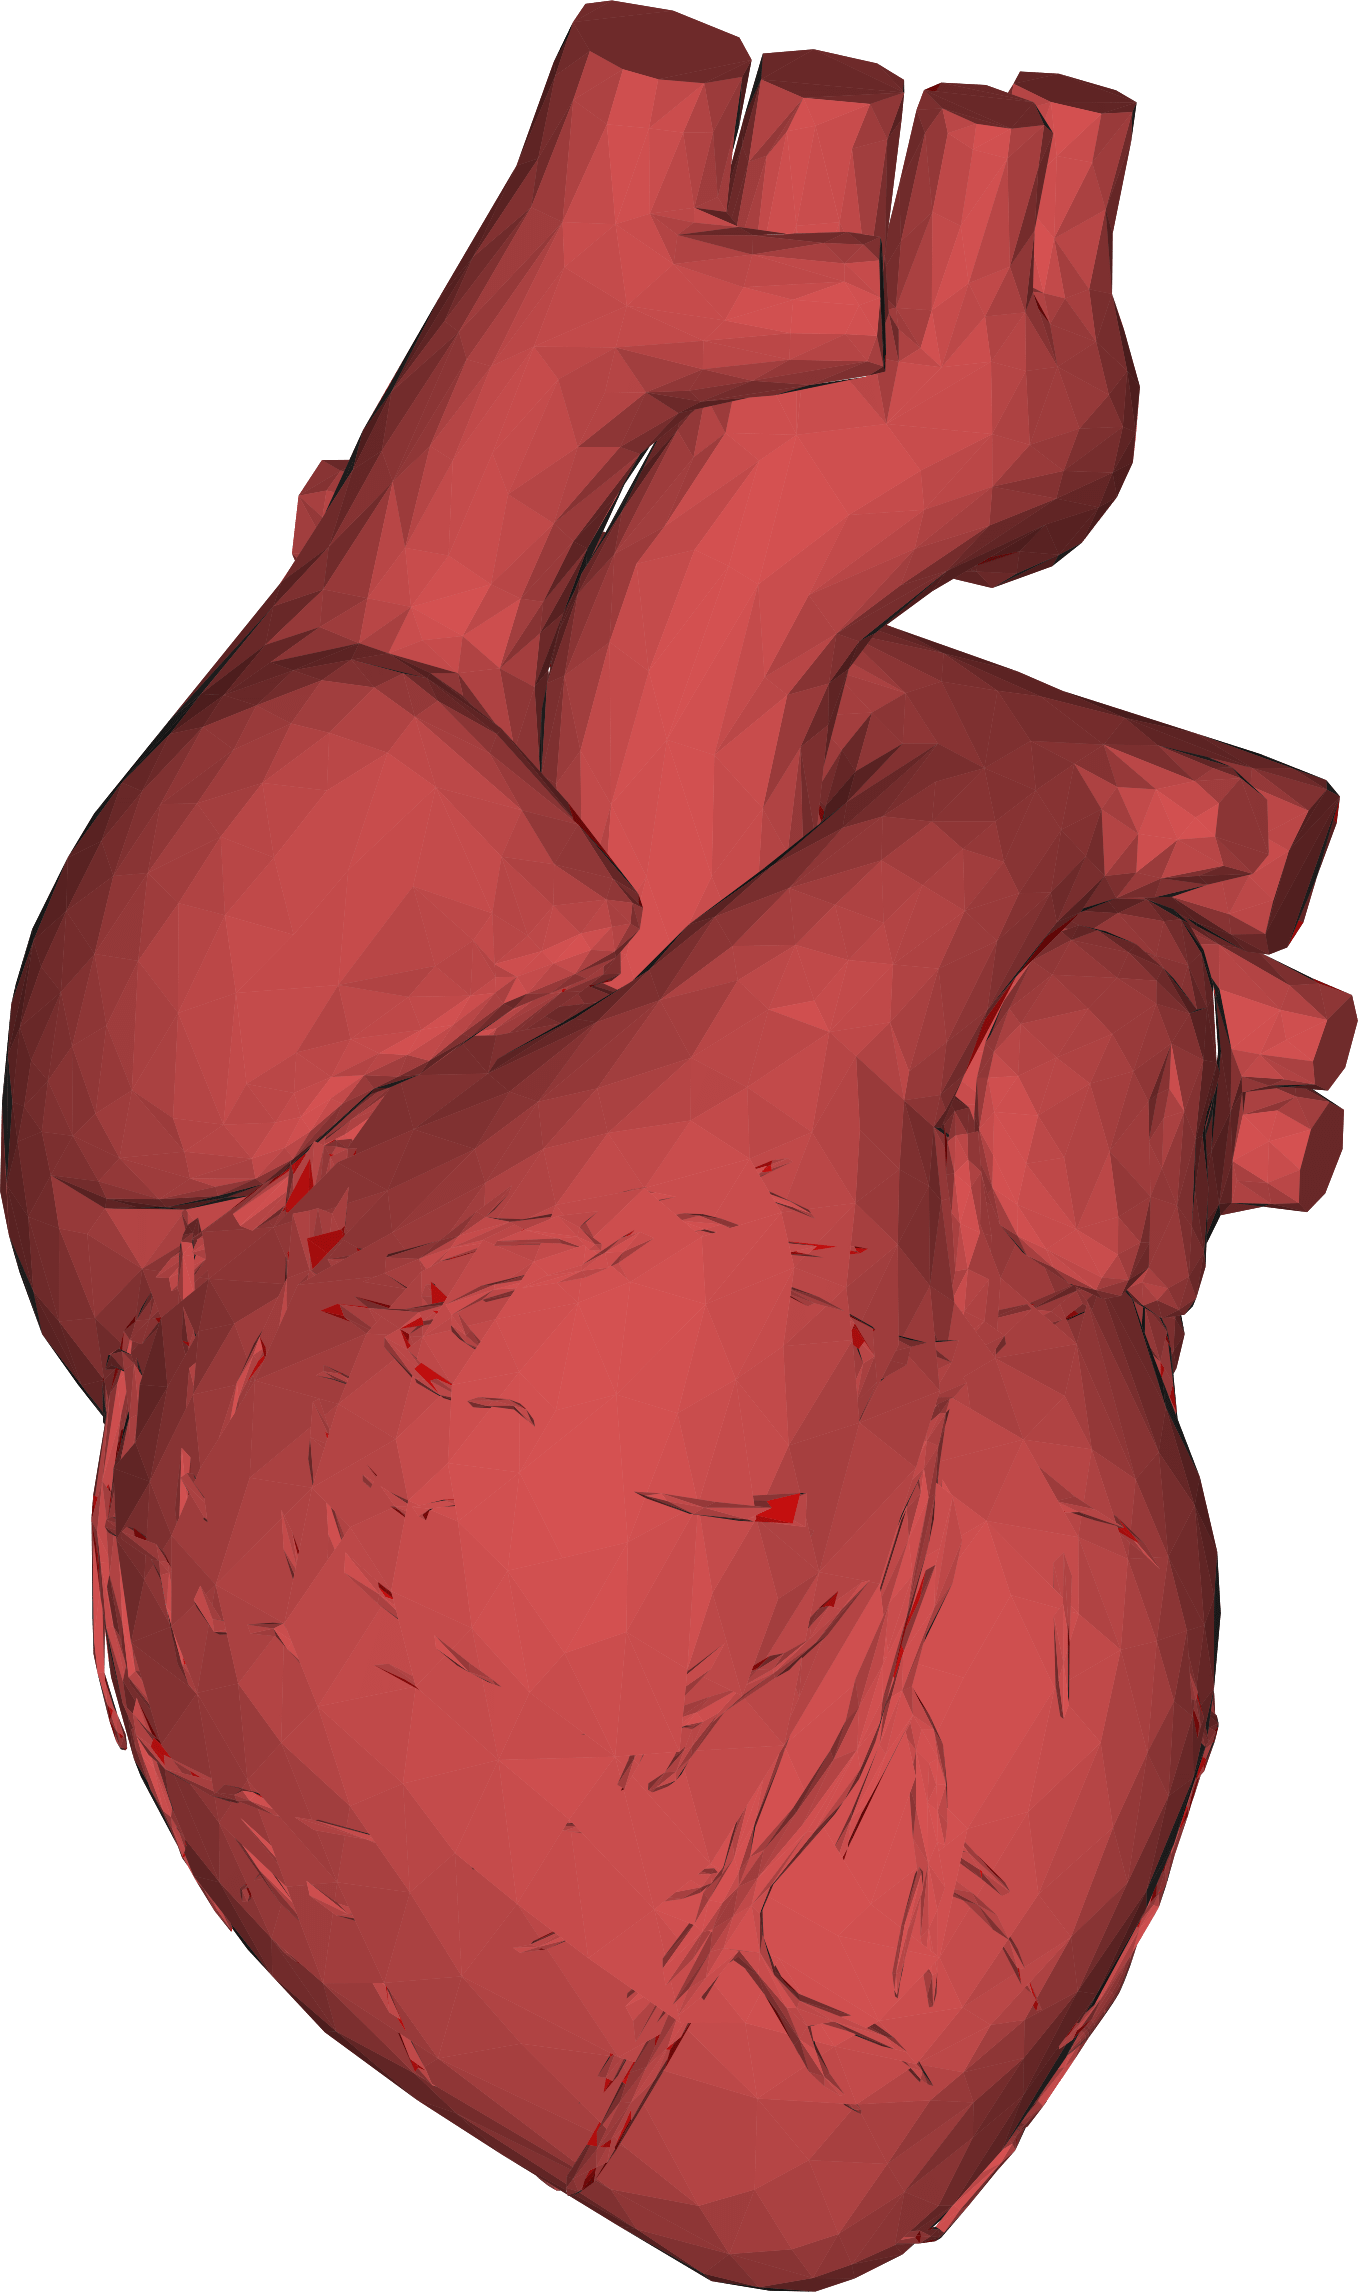 Priorità bassa dellimmagine del cuore umano rosso del cuore